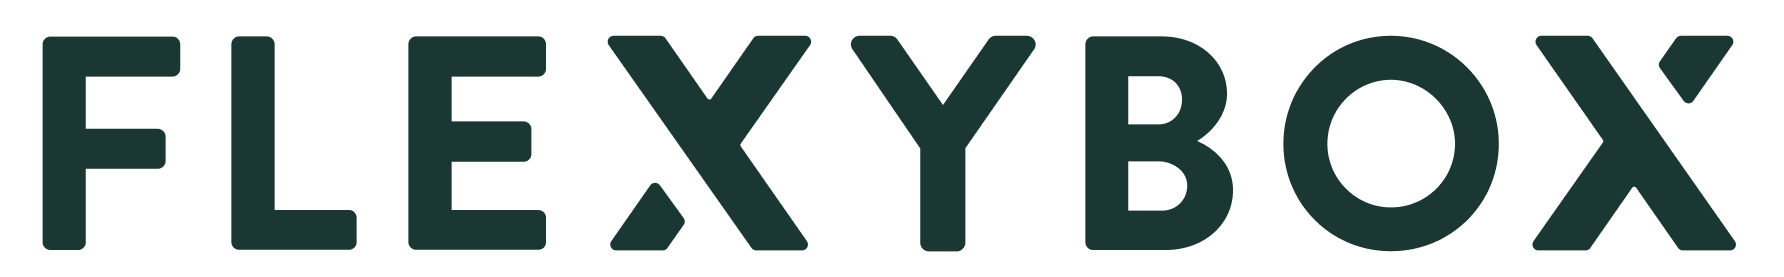 Flexybox logo